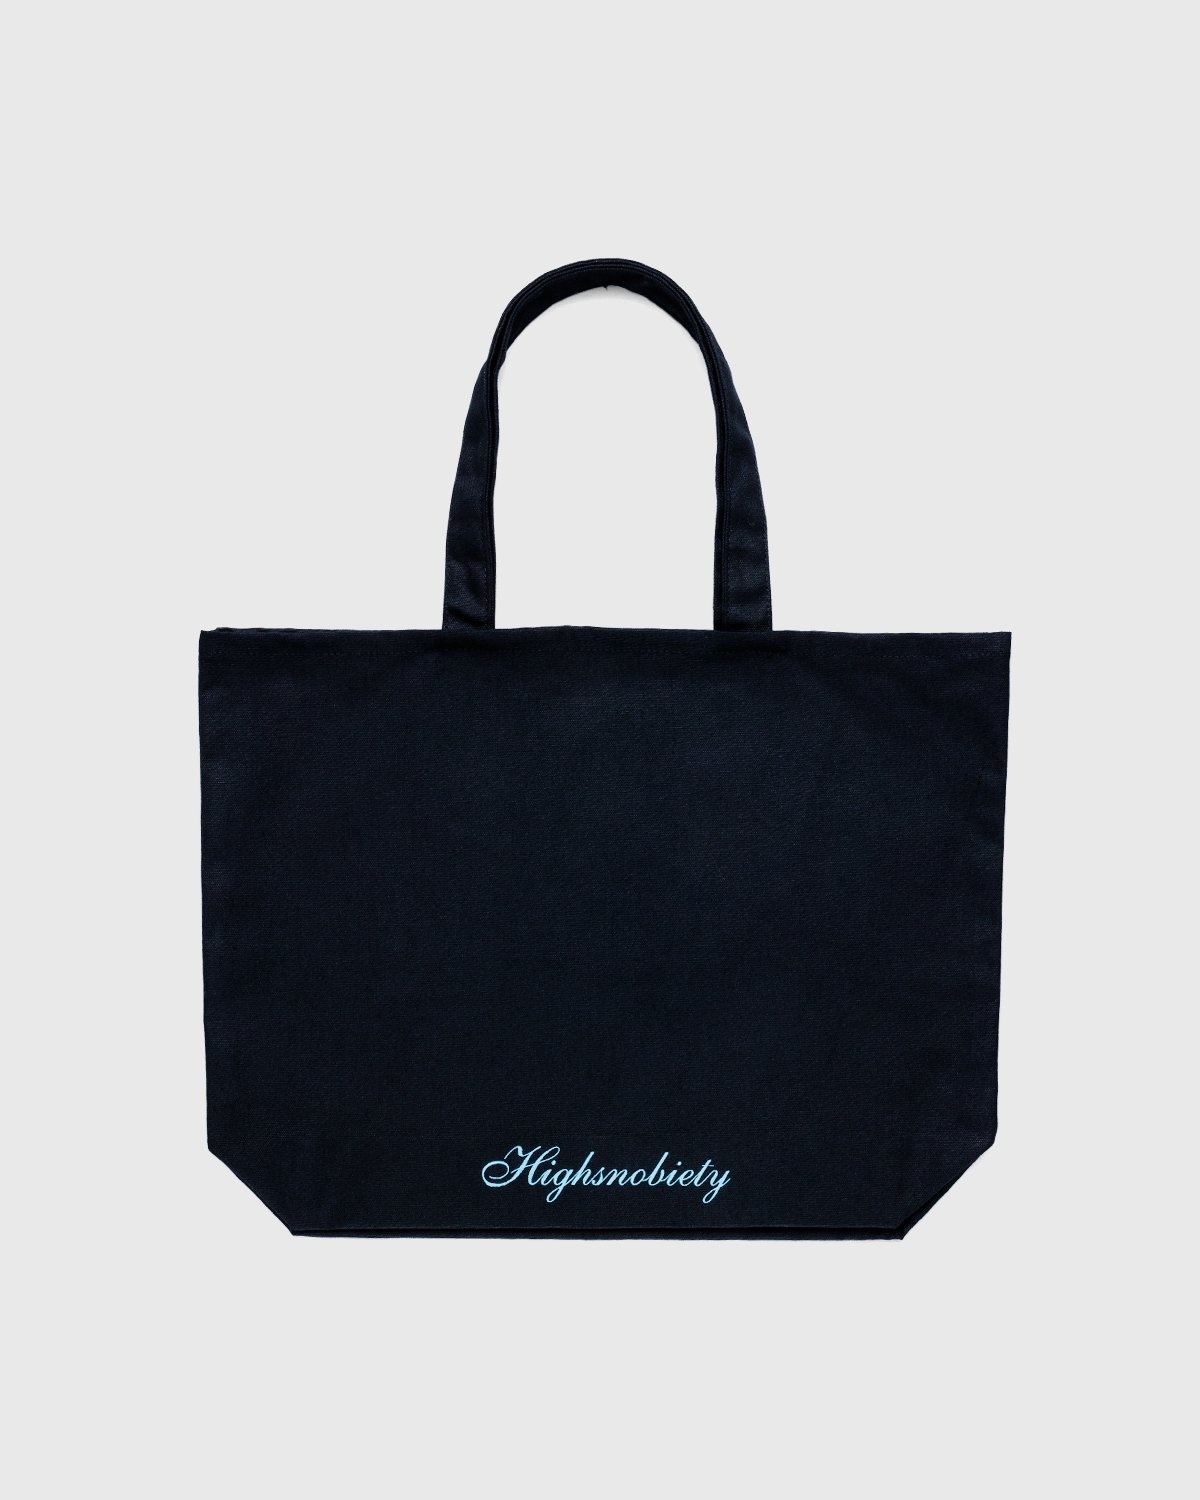 Highsnobiety – Not In Paris 3 x Galerie Perrotin Tote Bag Black - Tote Bags - Black - Image 2